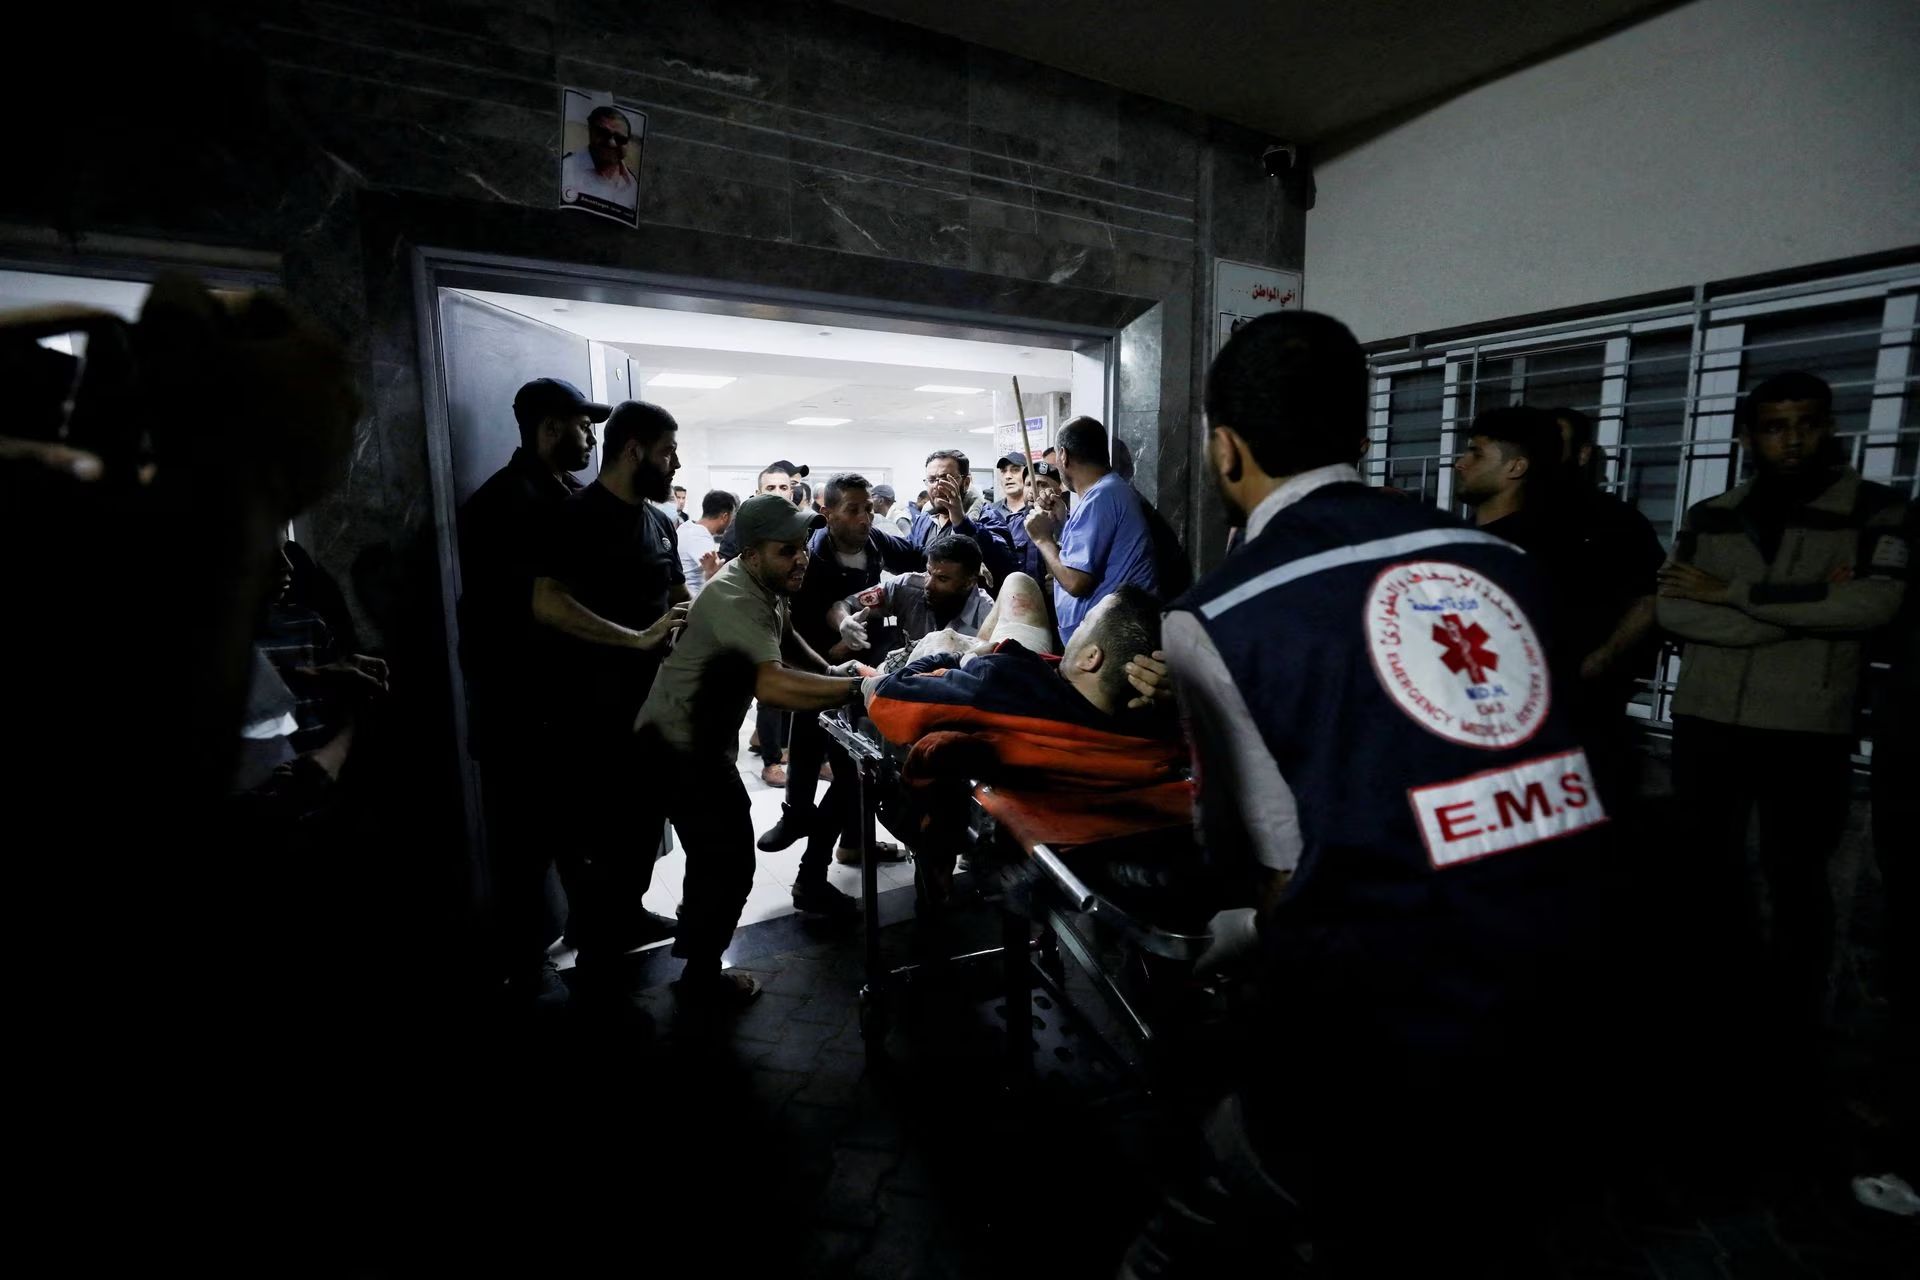 Οι Παλαιστίνιοι παρουσίασαν ανακοίνωση των Ισραηλινών που «ομολογούν» το κτύπημα στο νοσοκομείο και μετά την αποσύρουν